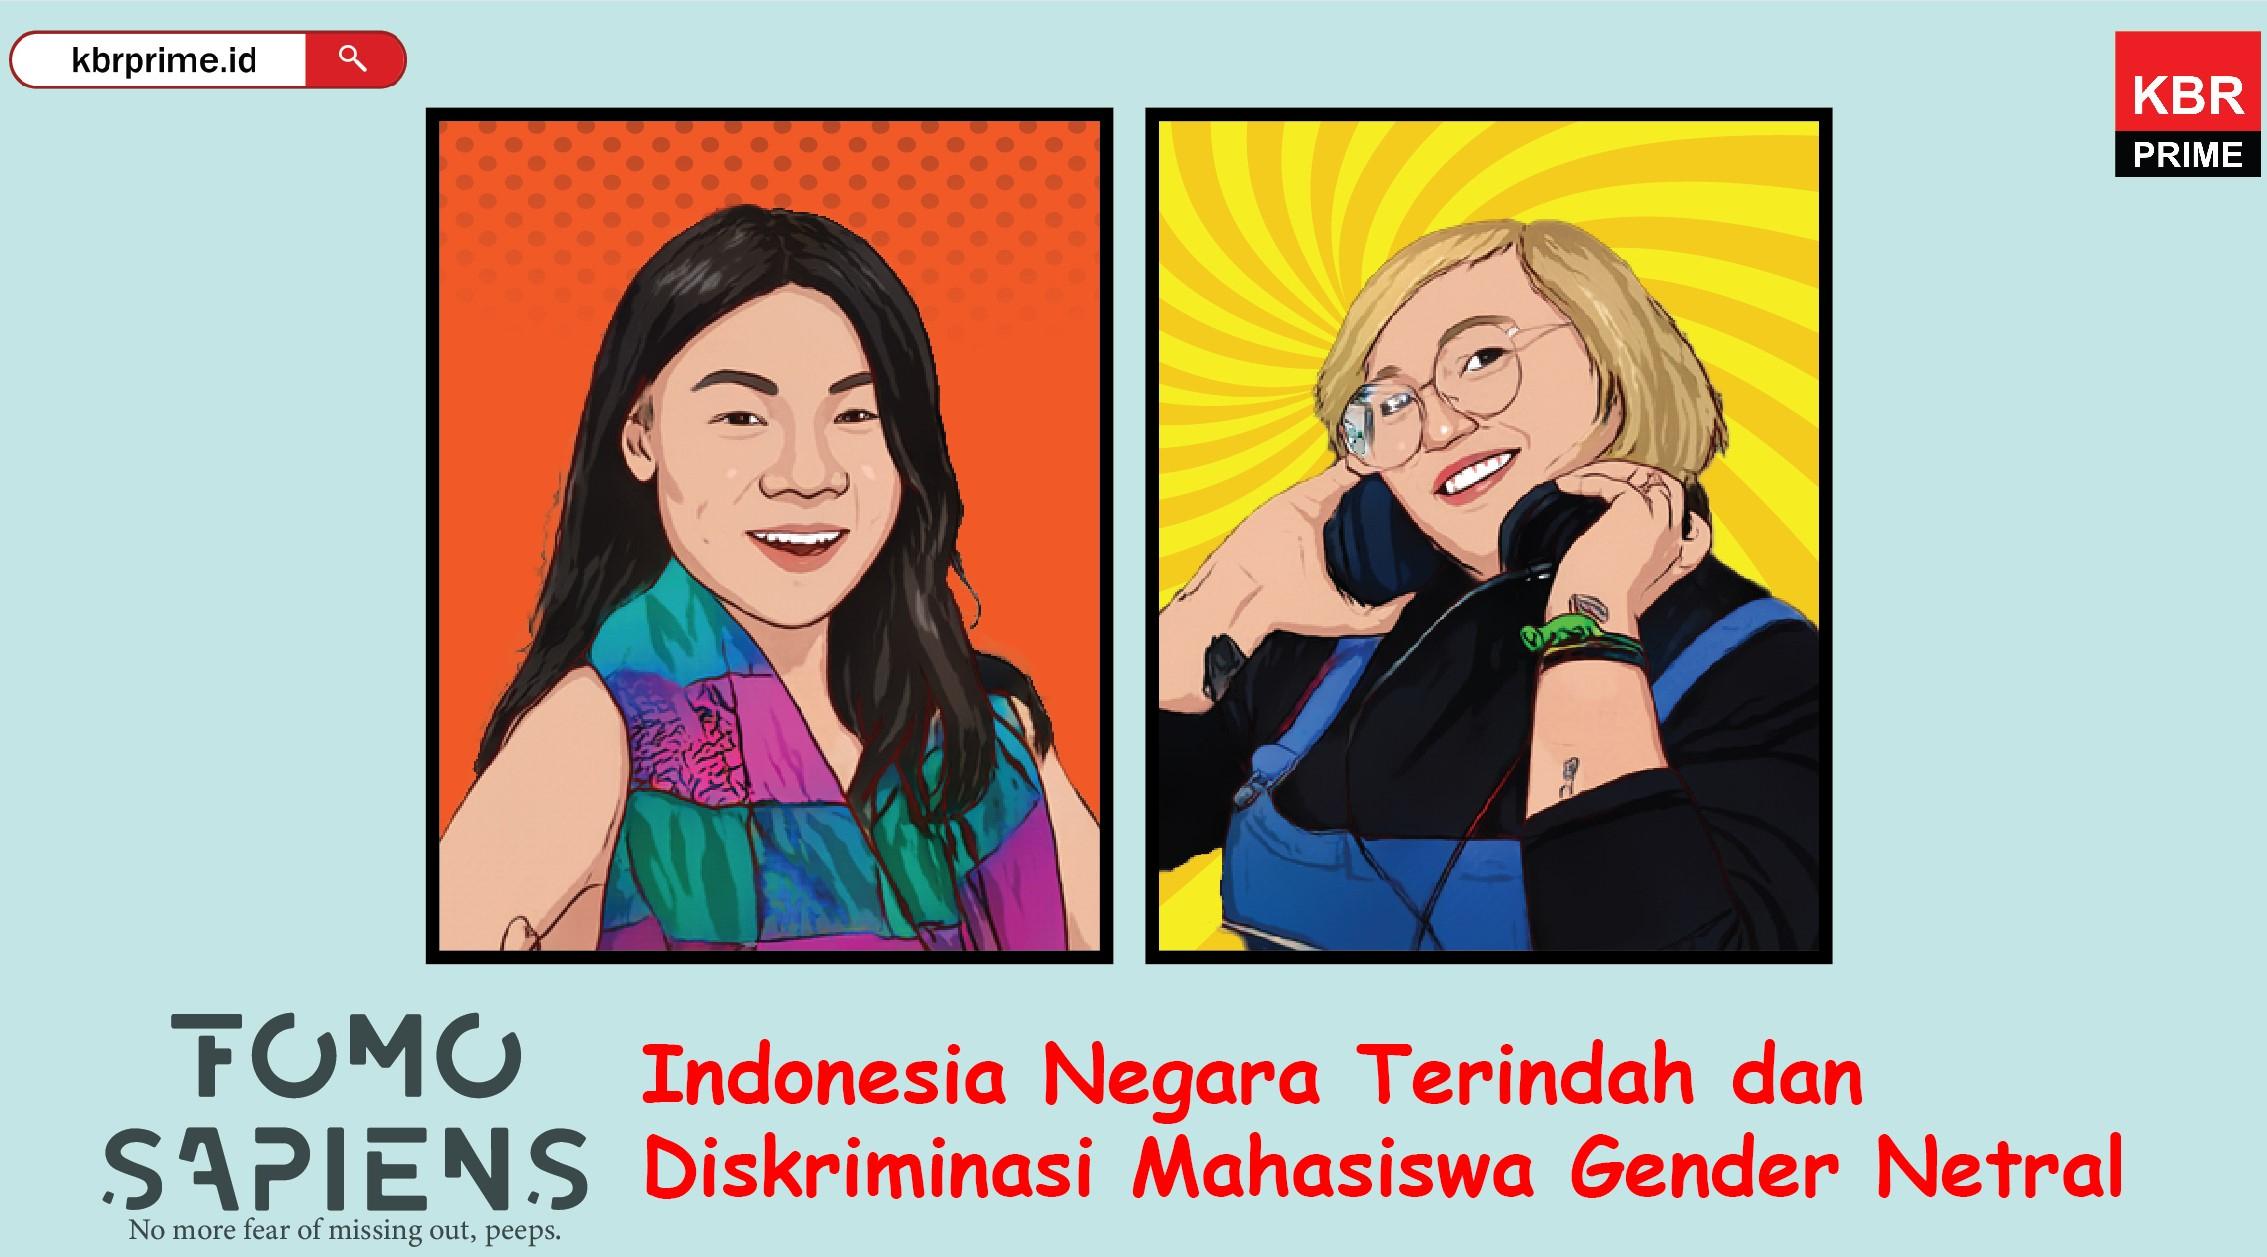 FOMO Sapiens : Indonesia Negara Terindah dan Diskriminasi Mahasiswa Gender Netral